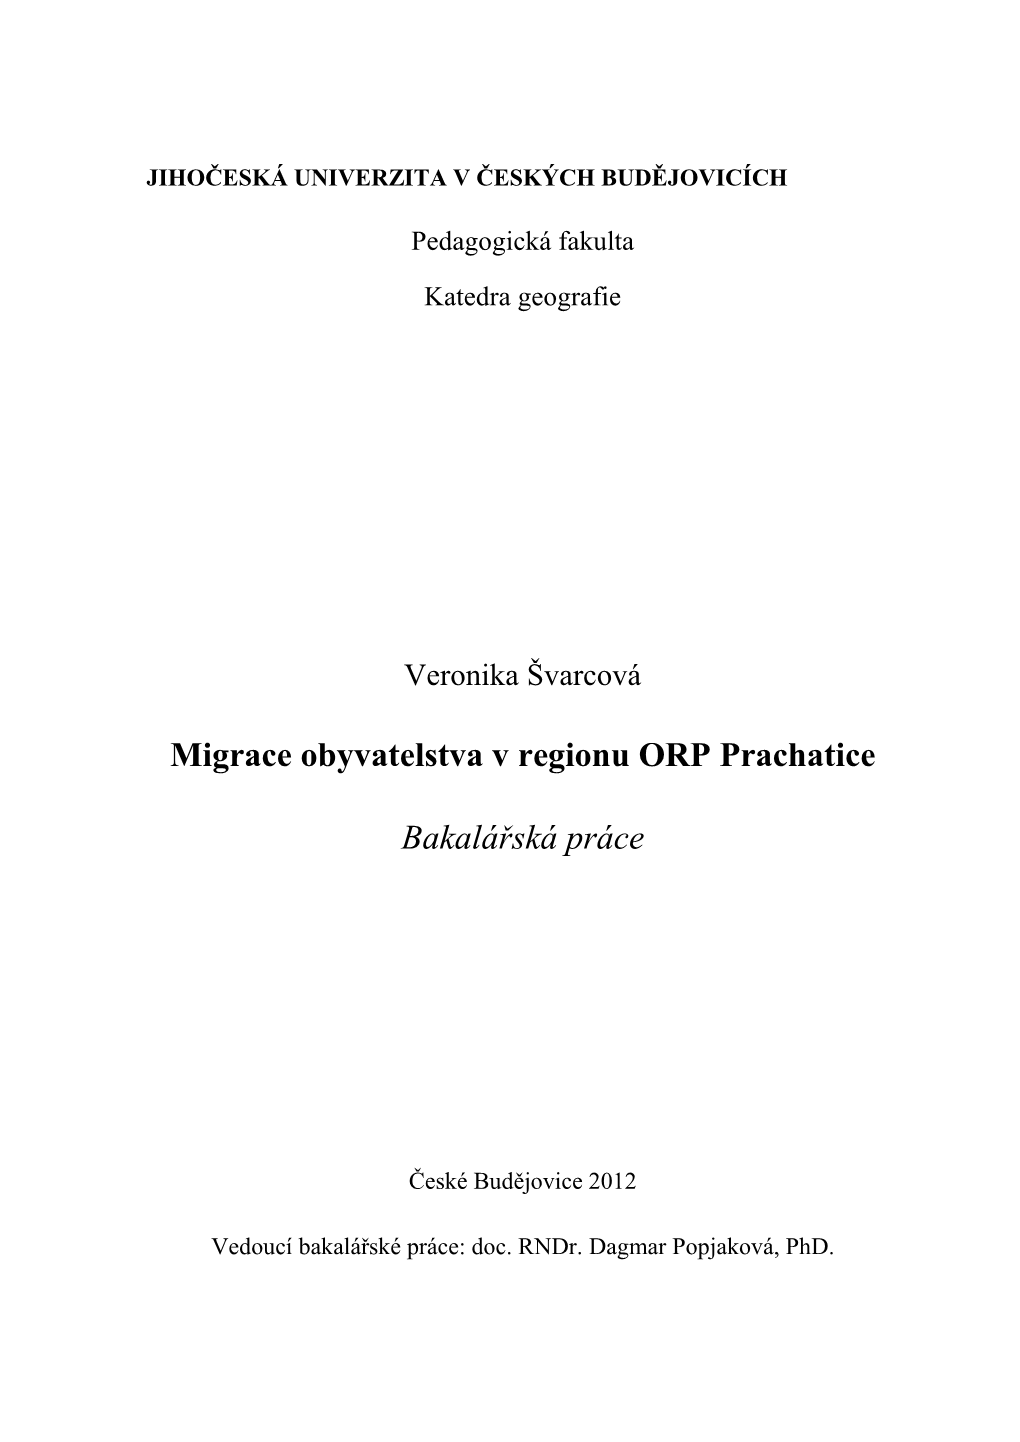 Migrace Obyvatelstva V Regionu ORP Prachatice